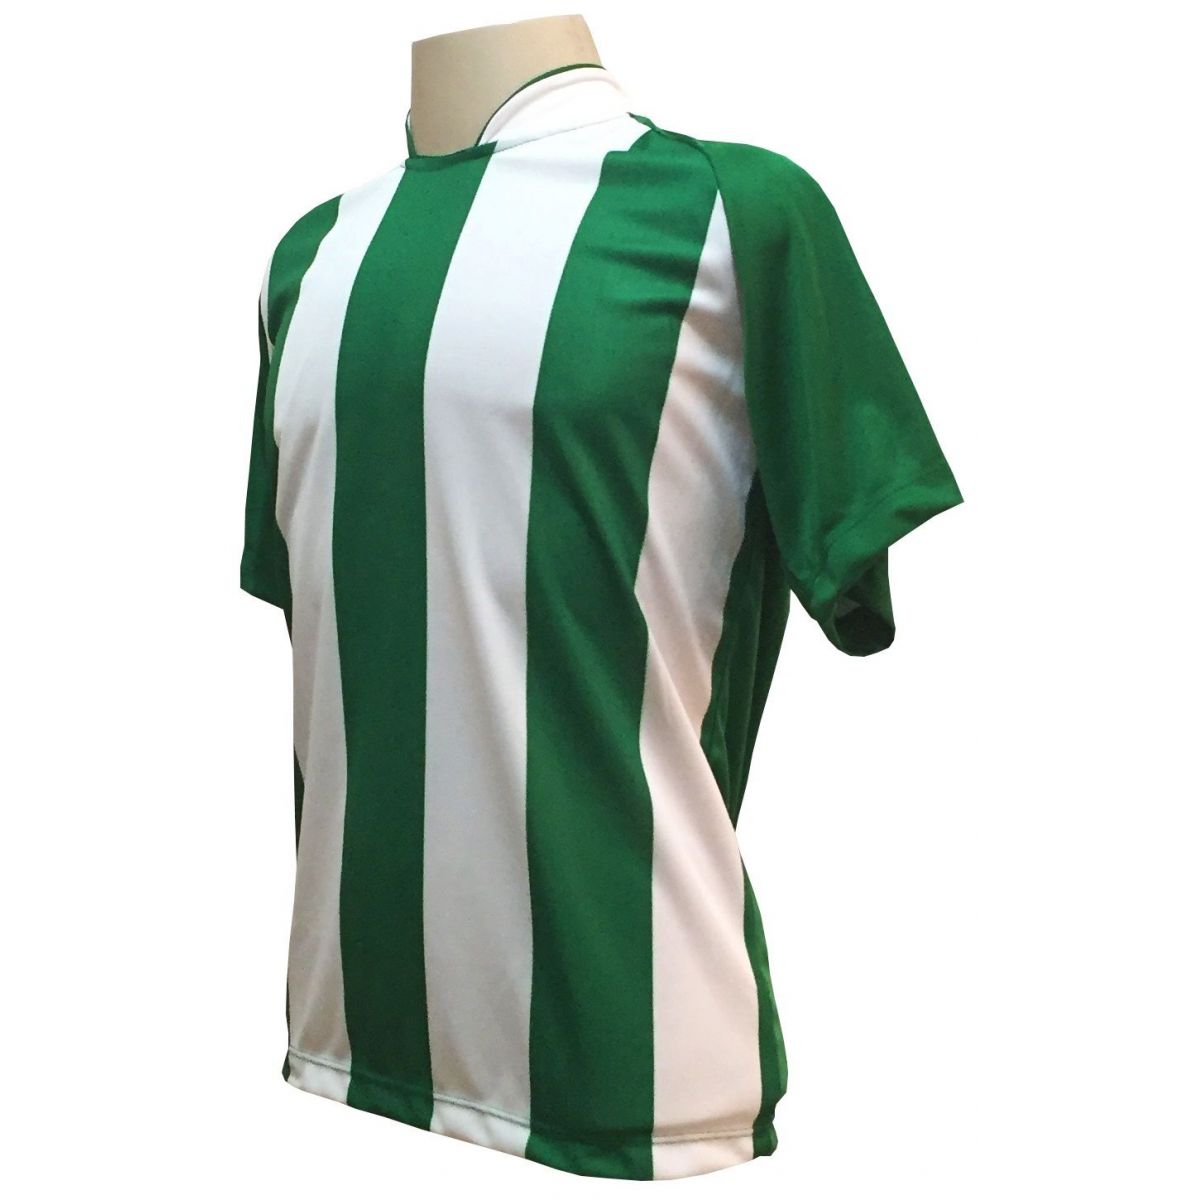 Uniforme Esportivo com 12 camisas modelo Milan Verde/Branco + 12 calções modelo Madrid Verde + Brindes